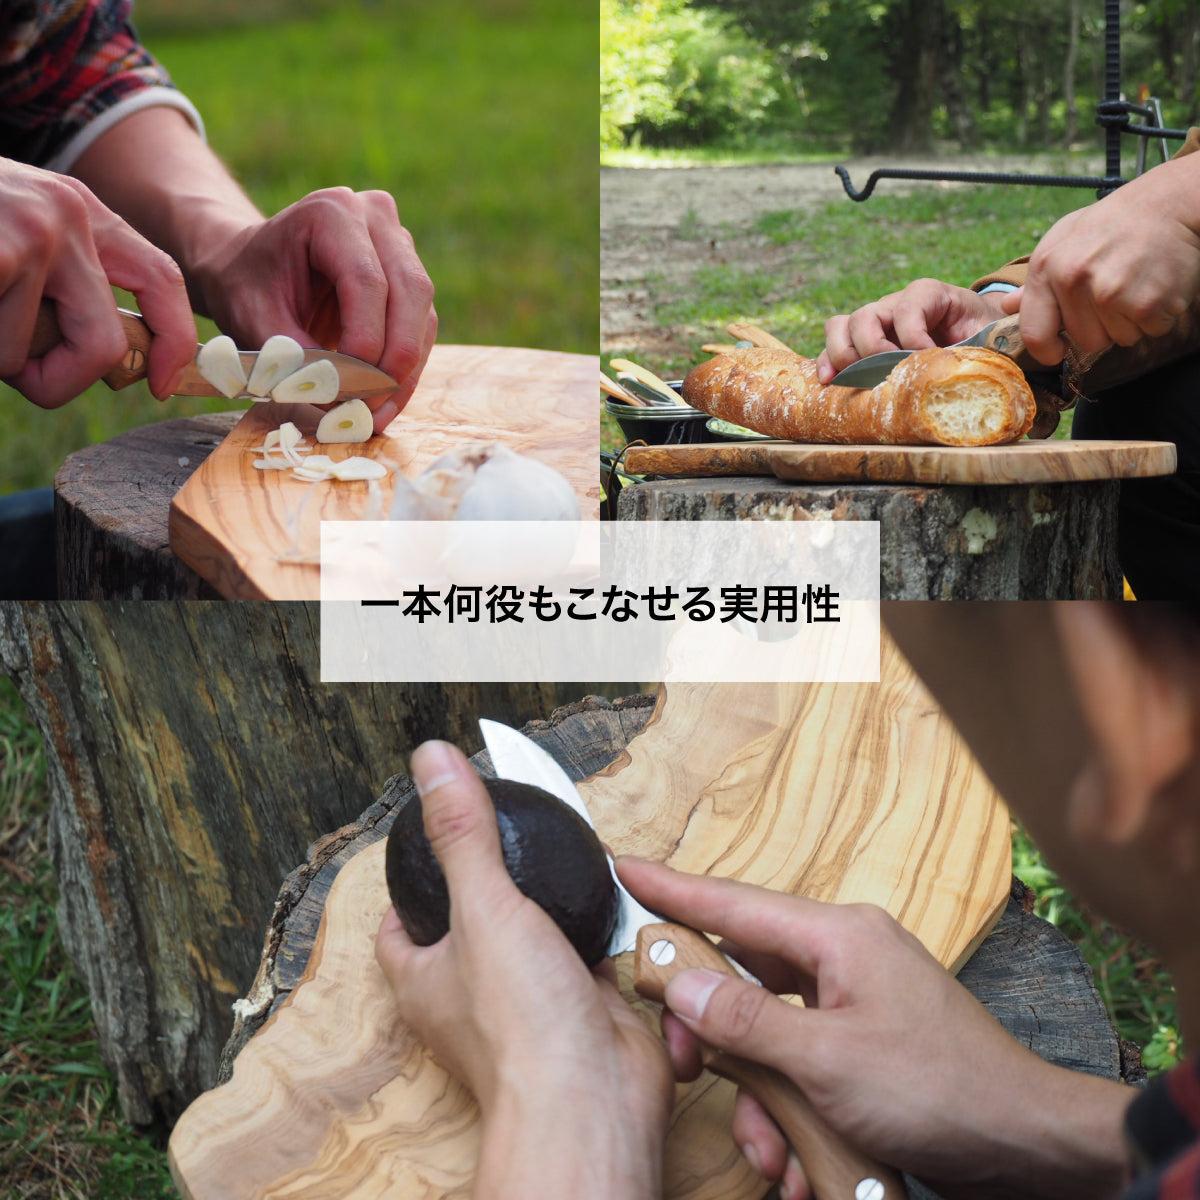 折畳式料理ナイフSolo リップルブラック (ステンレス鋼/銀紙三号) 9,900円